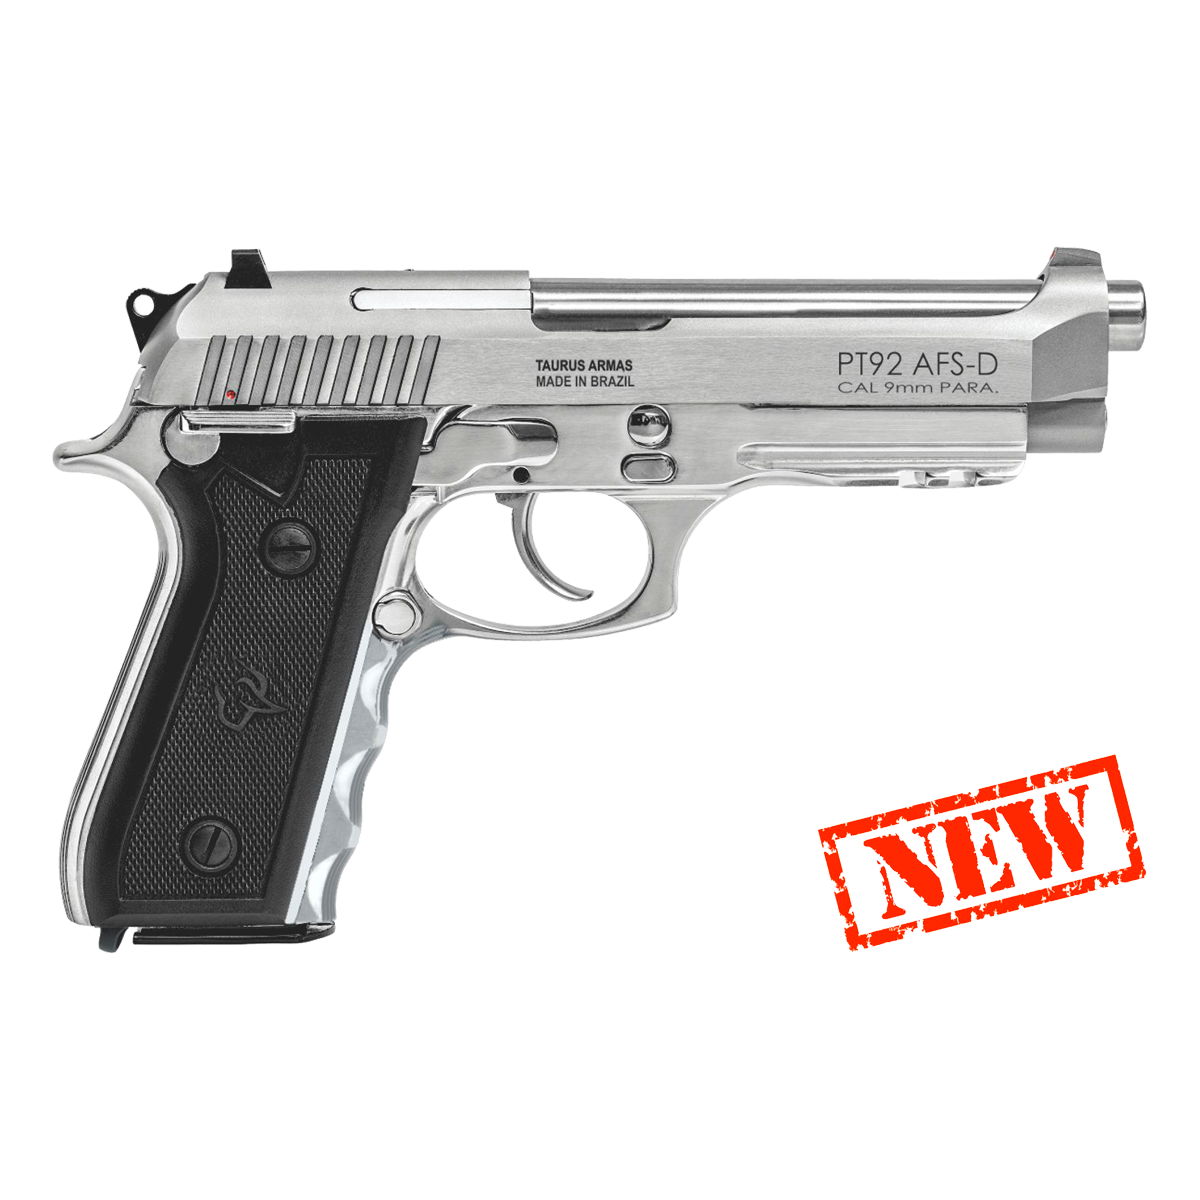 Pistola 92 Inox - Calibre 9 mm - Taurus